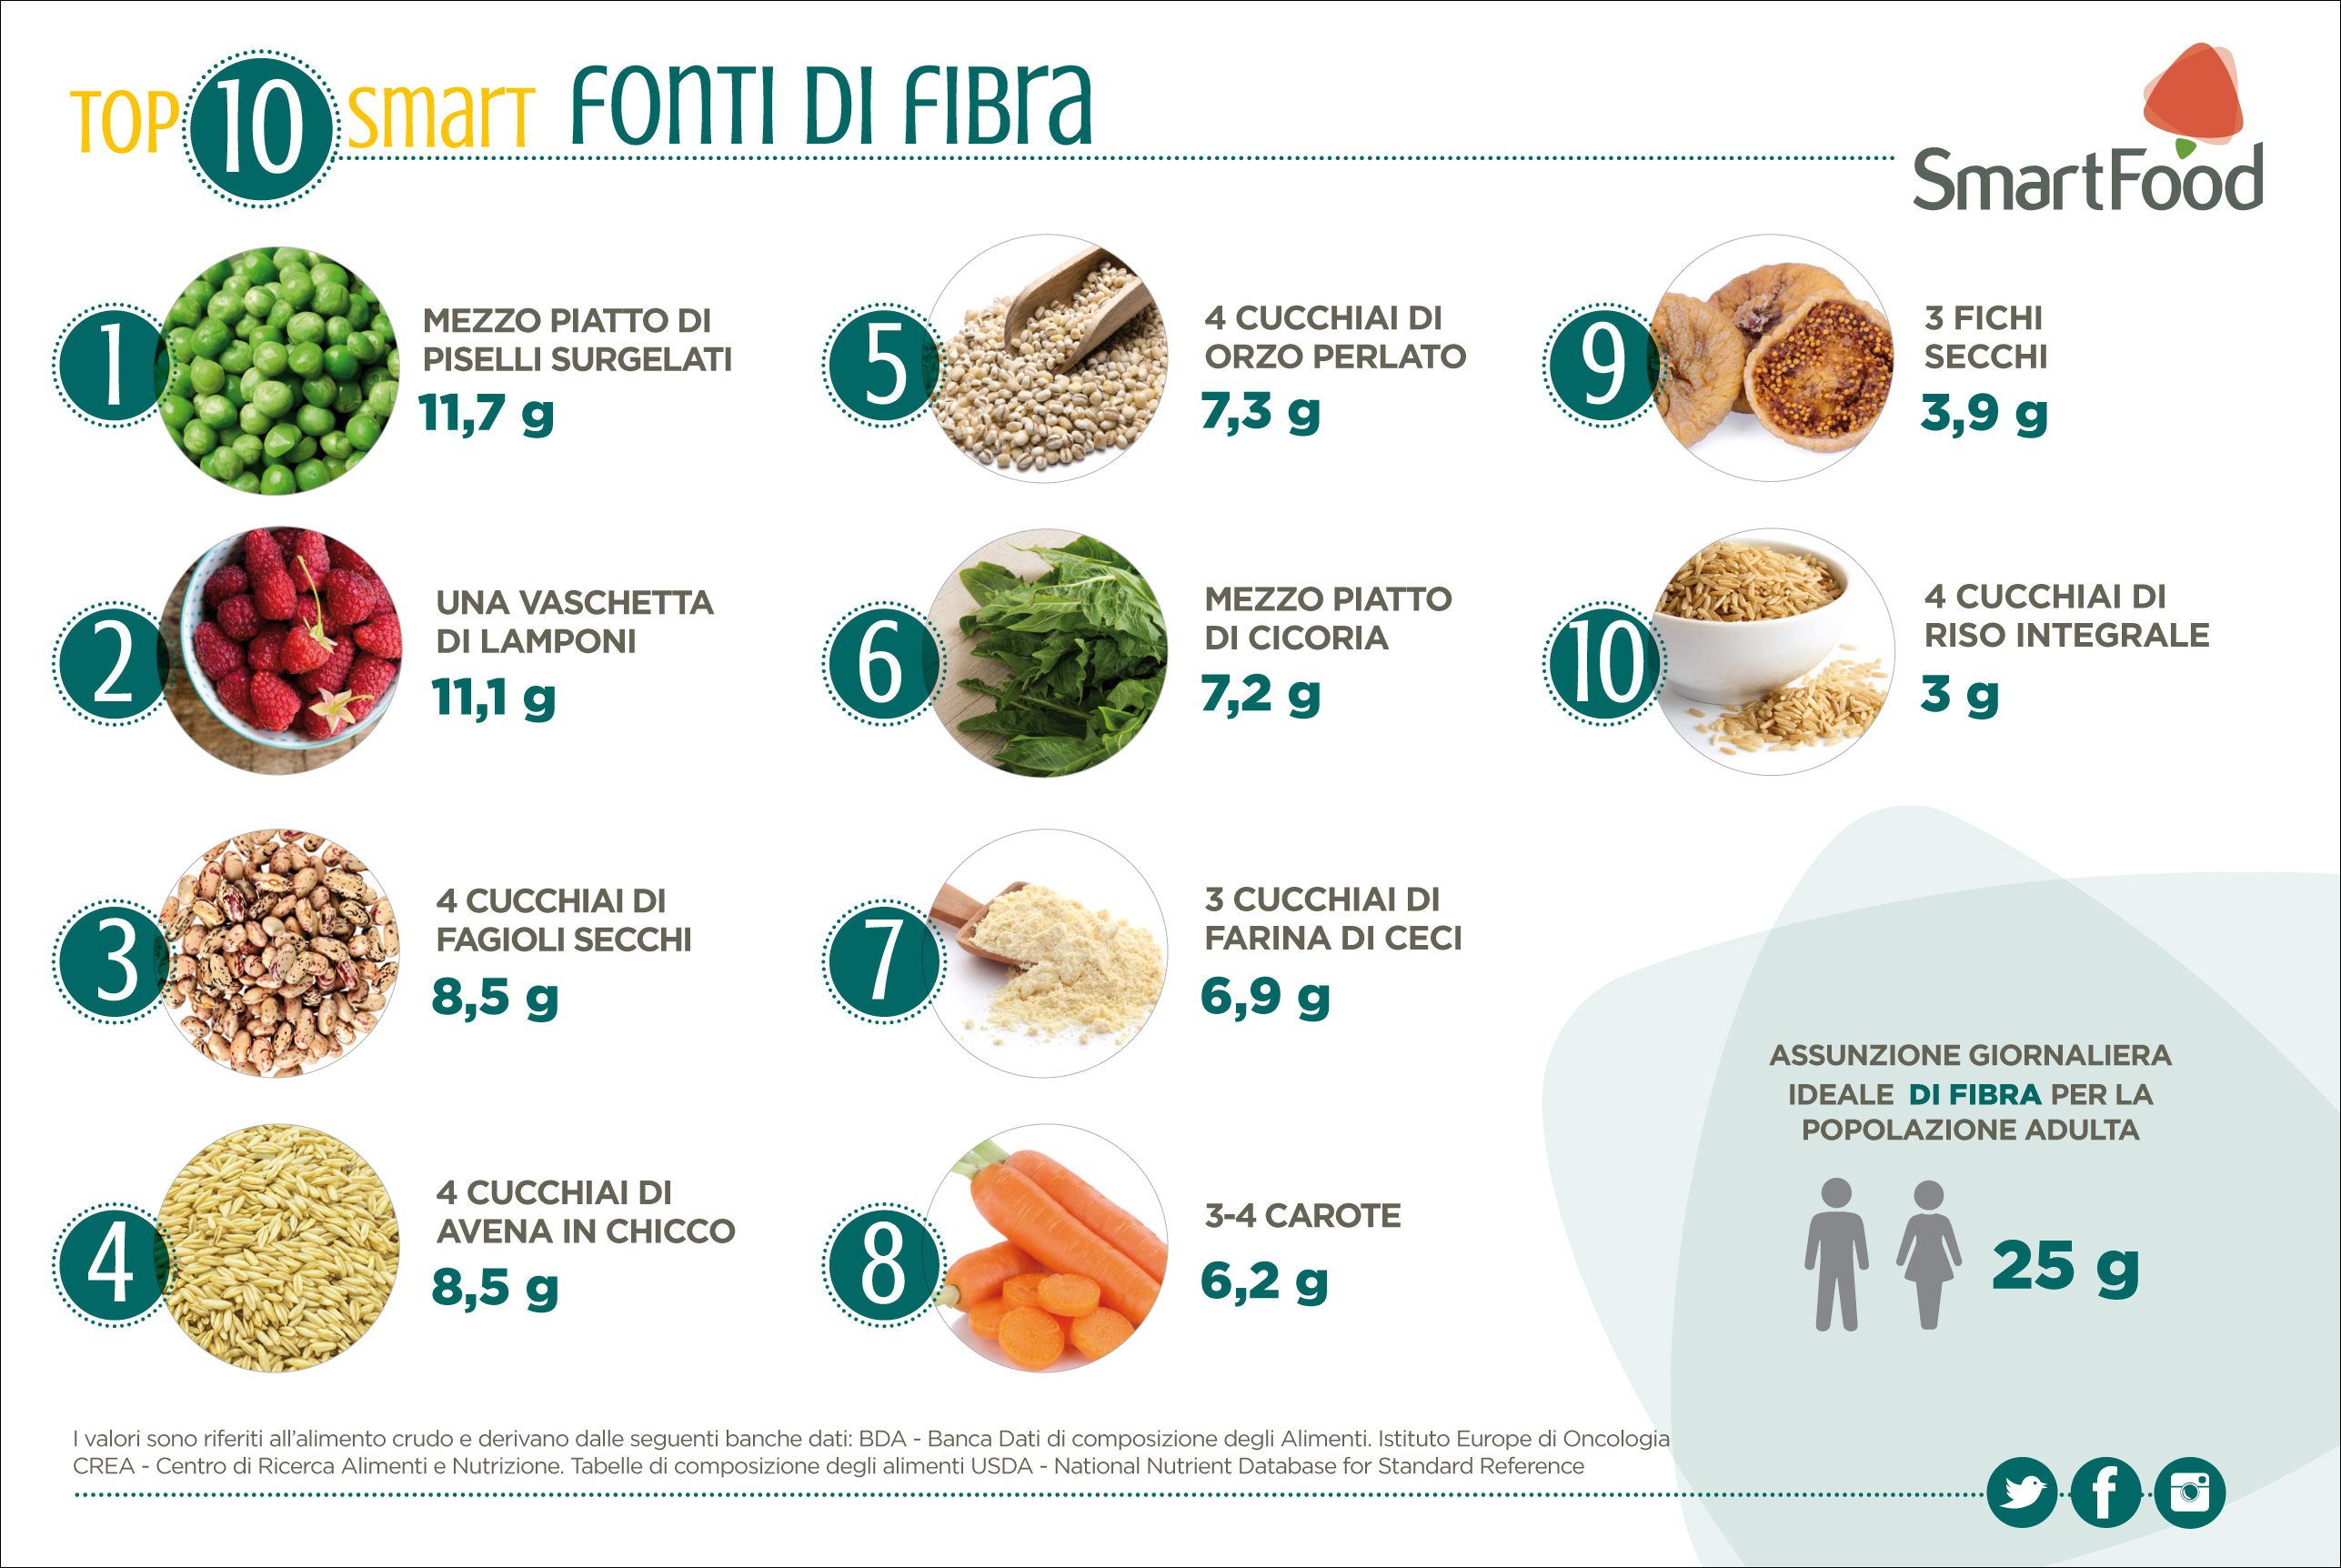 TOP10_FONTI_DI_FIBRA.jpg